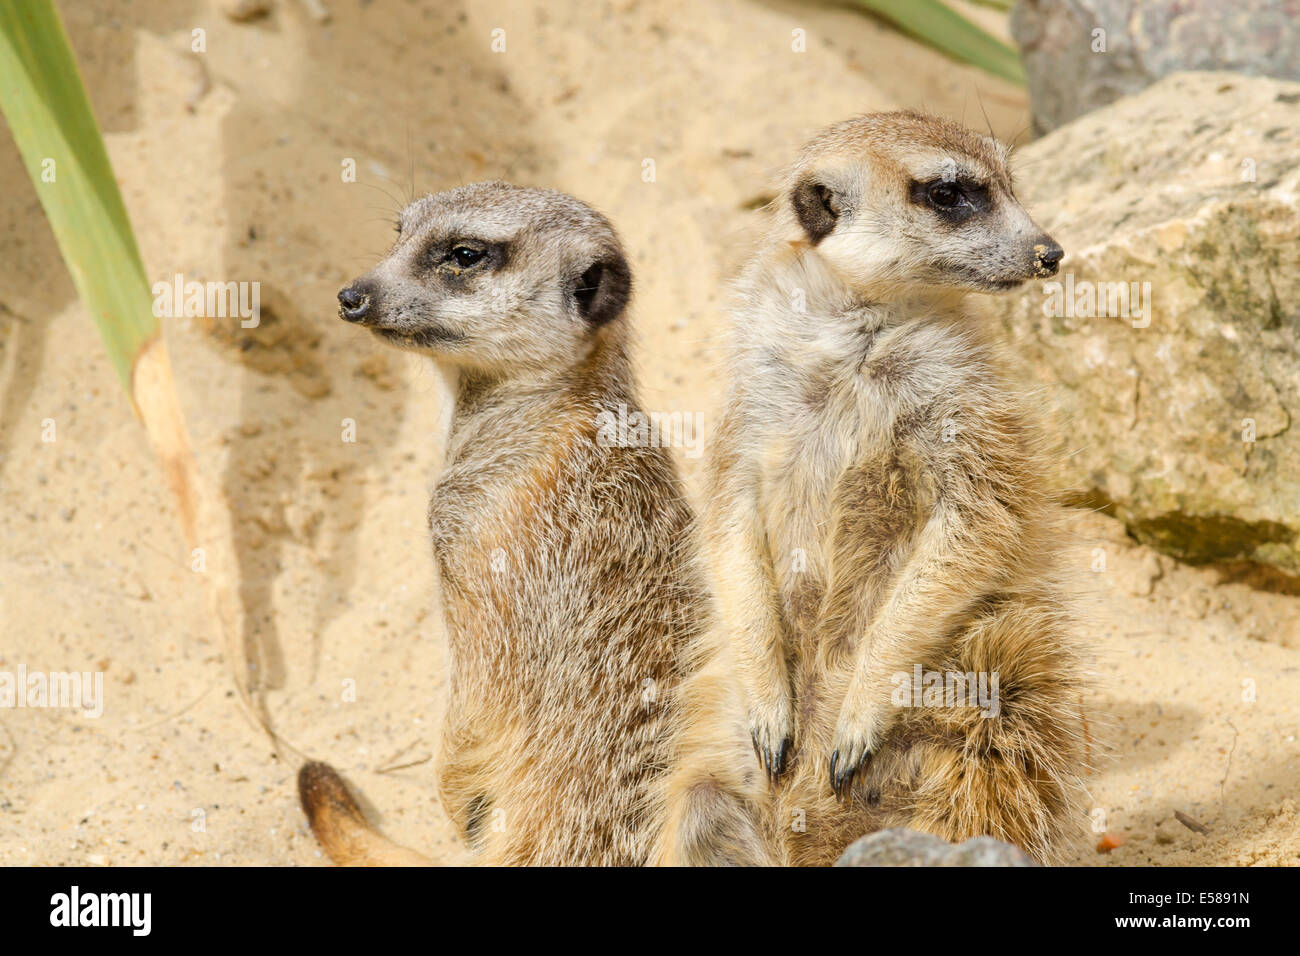 Two meerkats, Suricata suricatta Stock Photo